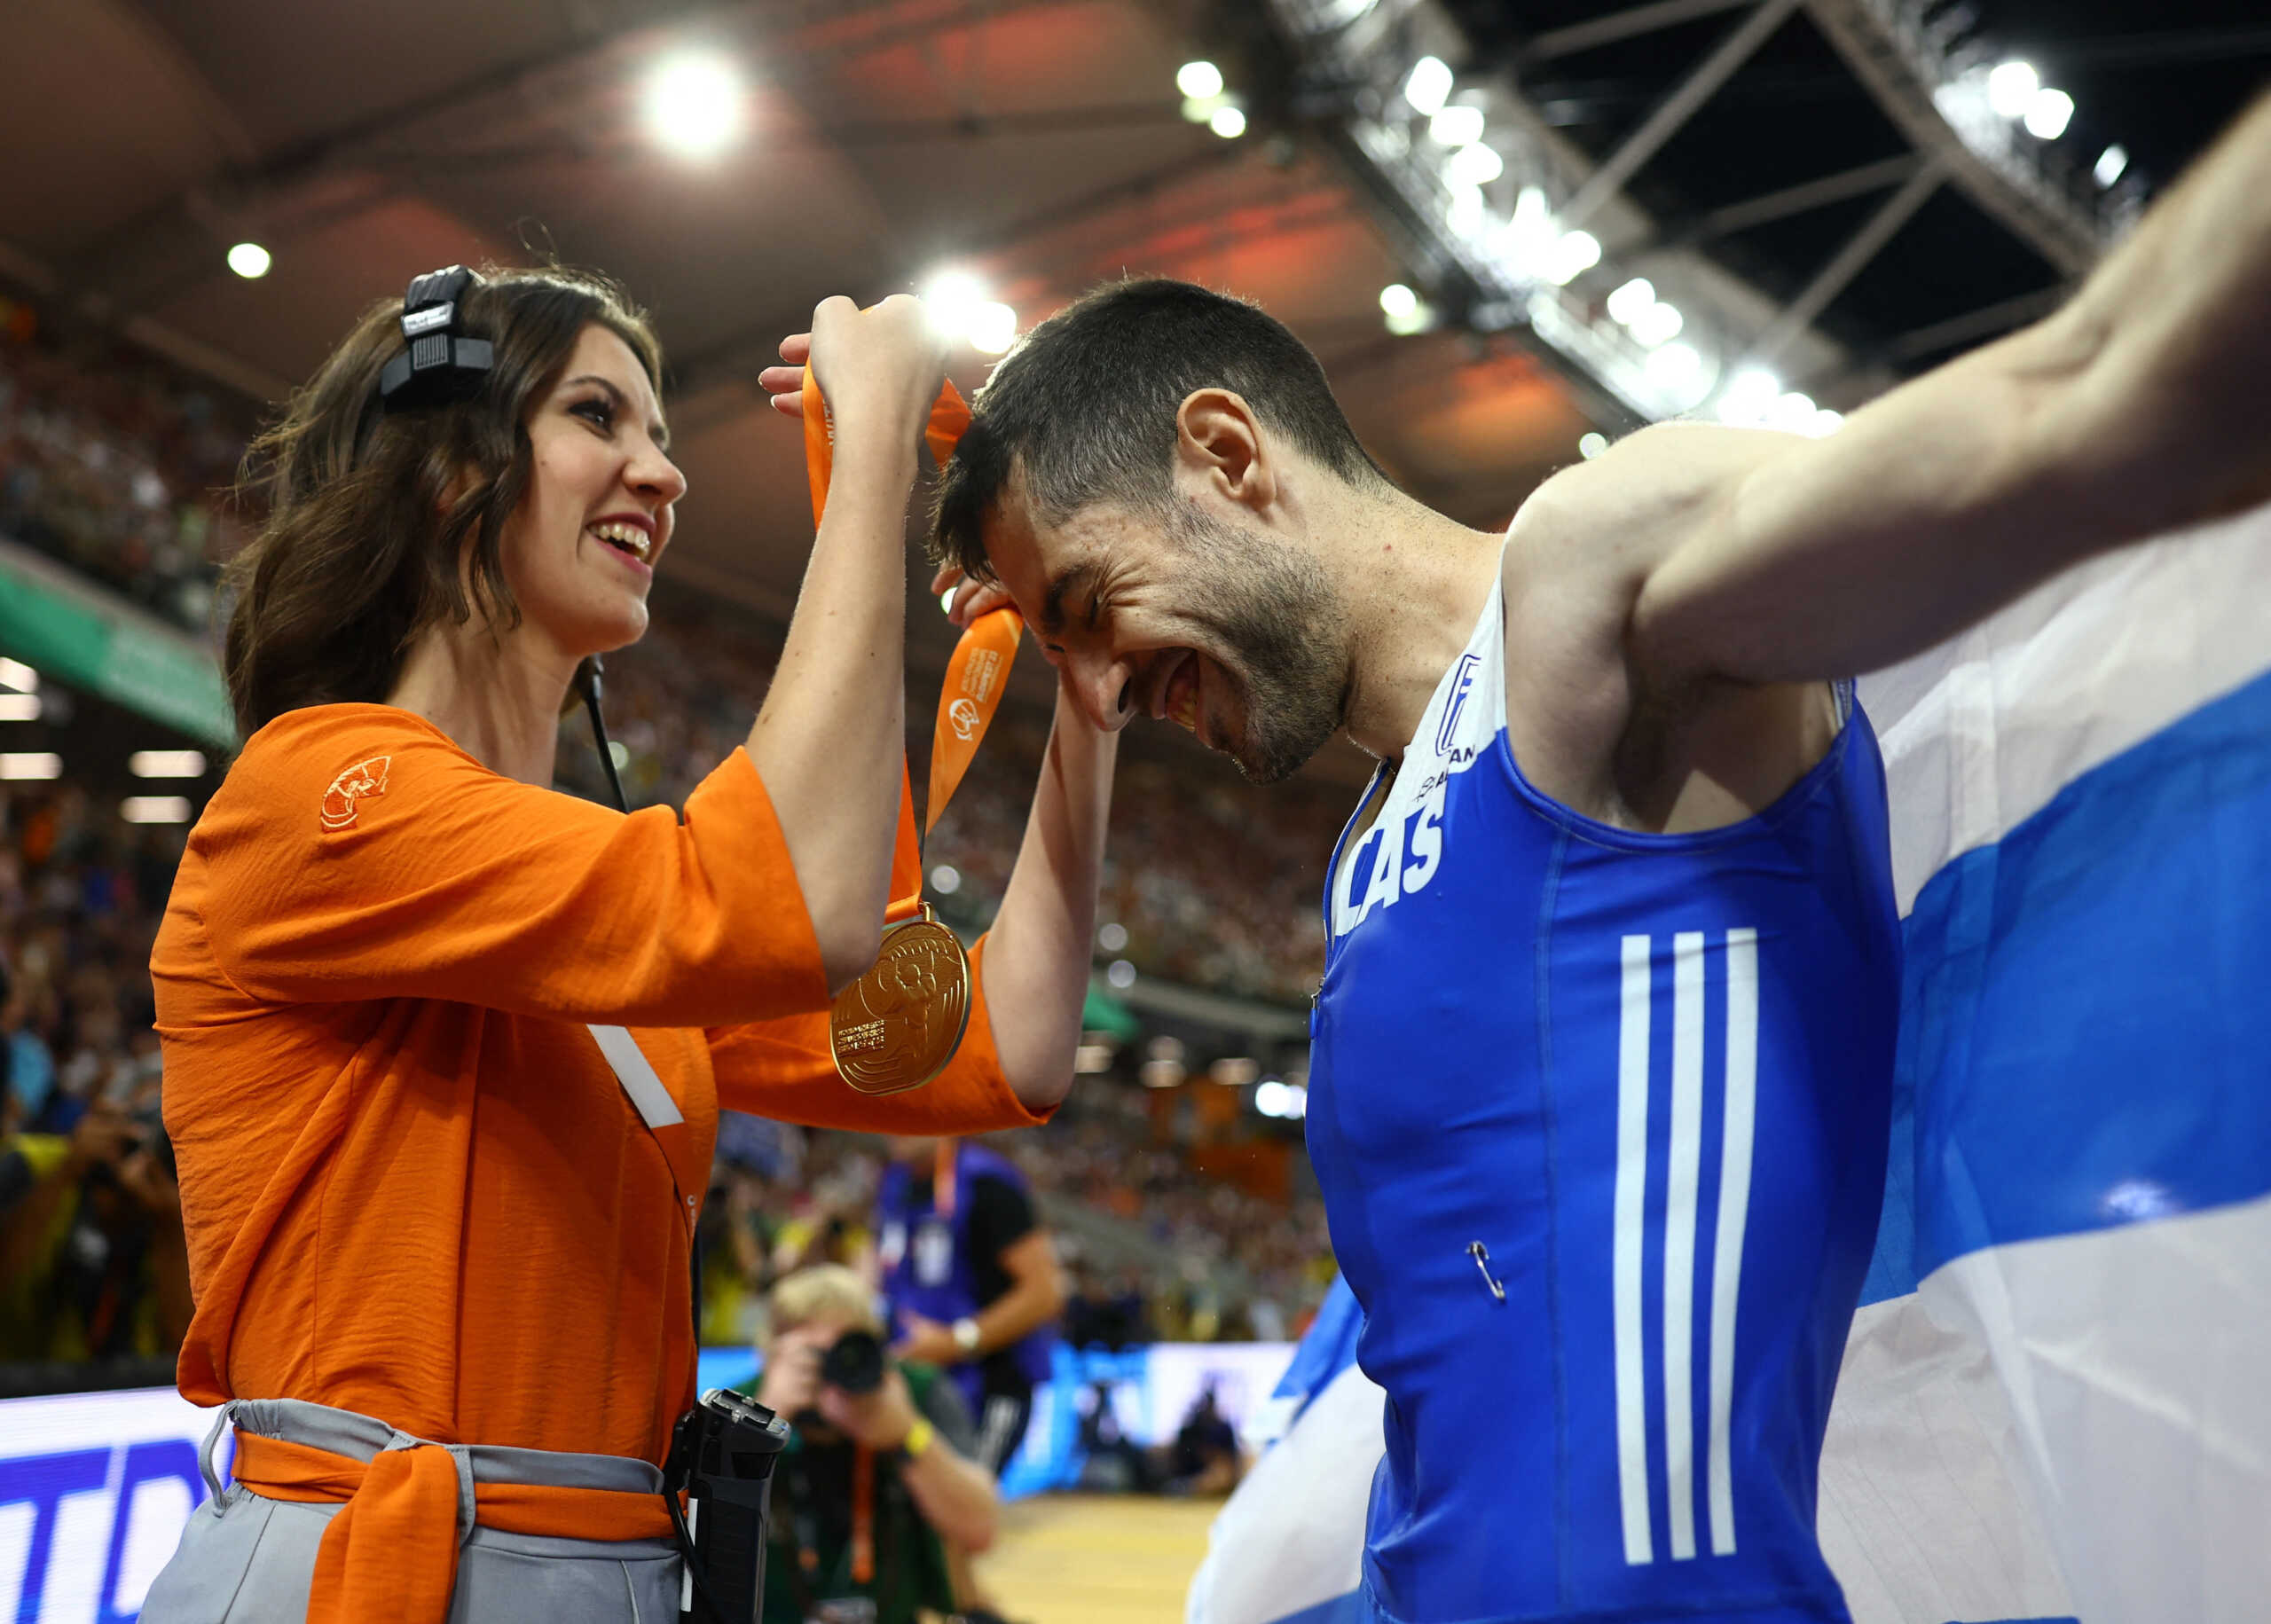 Τεντόγλου από χρυσάφι: Ο Έλληνας πρωταθλητής έχει στην κατοχή του όλους τους τίτλους